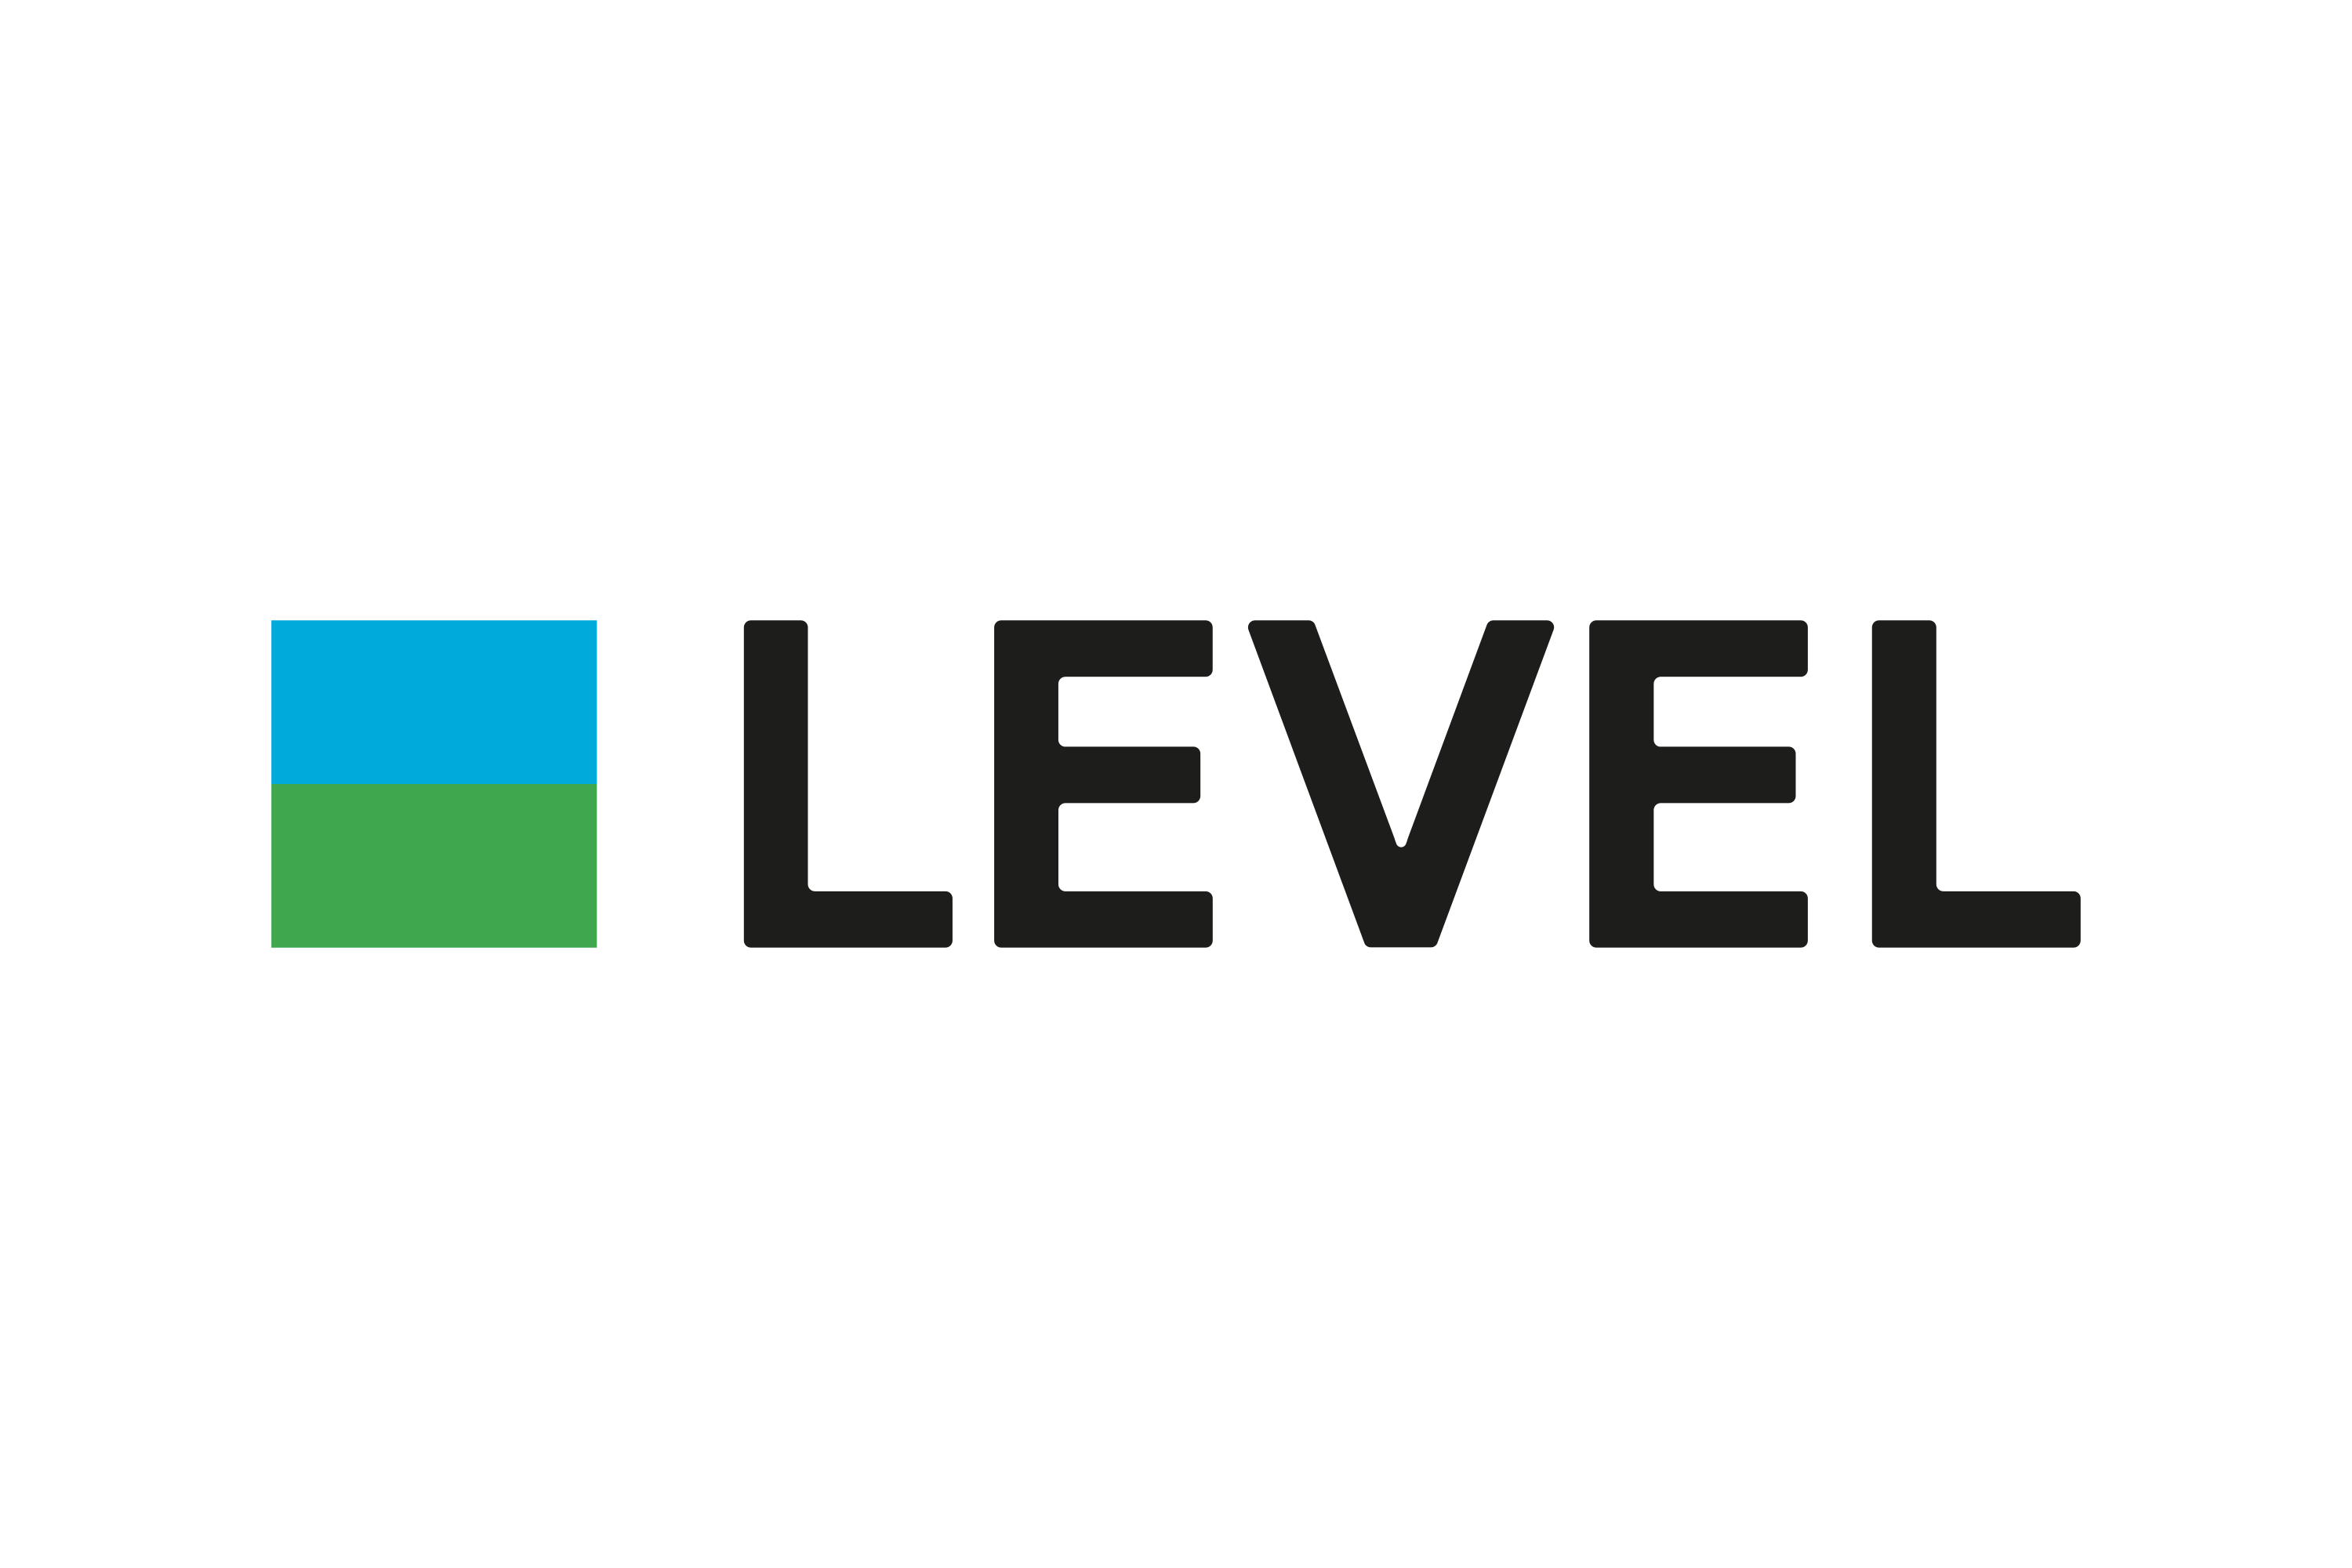 Download Level Logo in SVG Vector or PNG File Format - Logo.wine